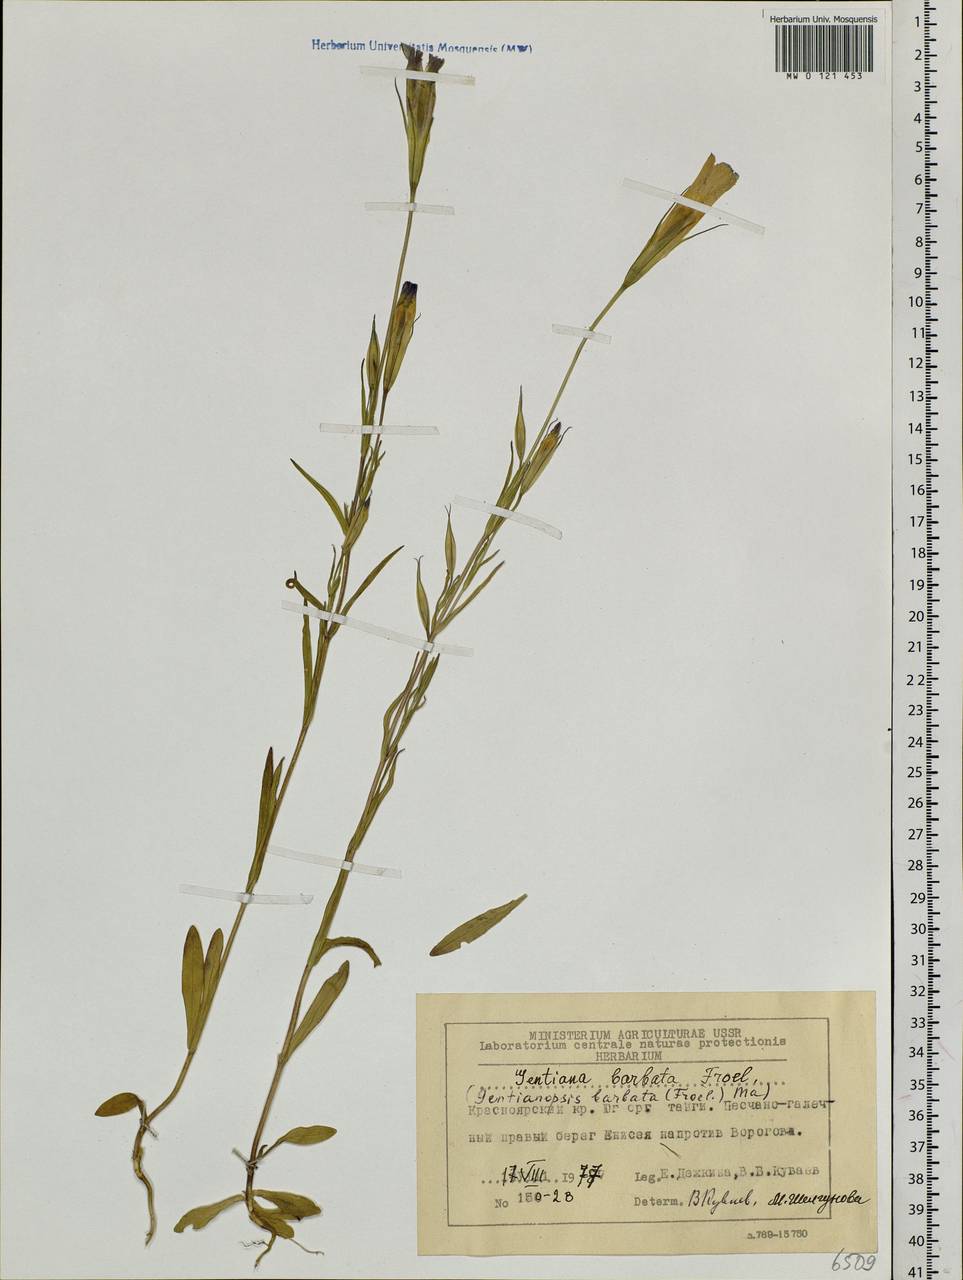 Gentianopsis barbata, Siberia, Central Siberia (S3) (Russia)